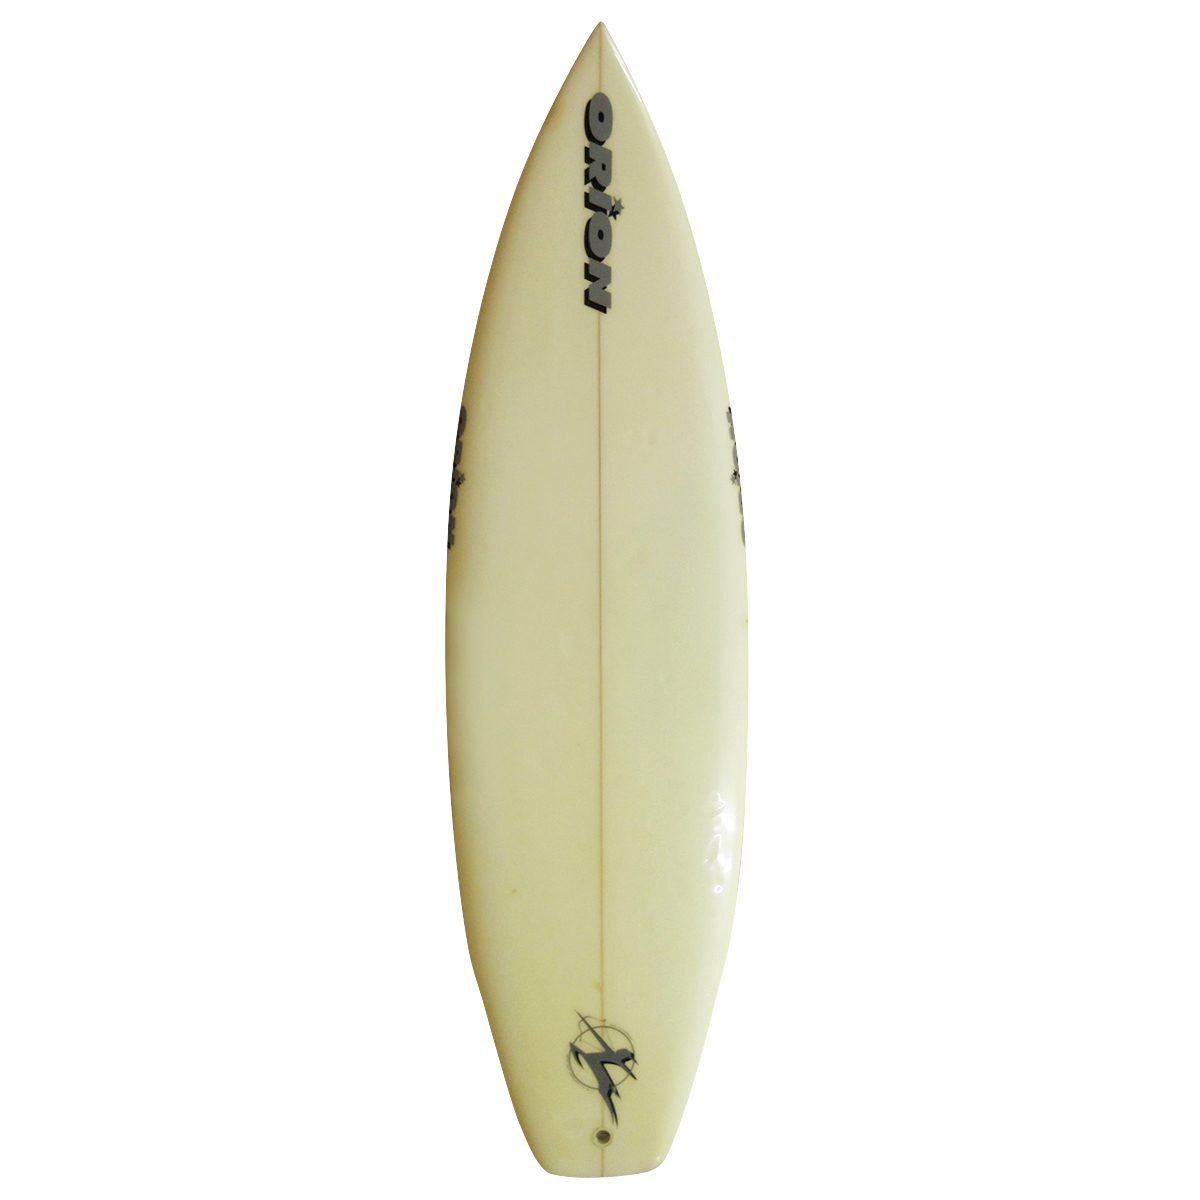  / ORION SURF CRAFT / VINTAGE THRUSTER 5`10